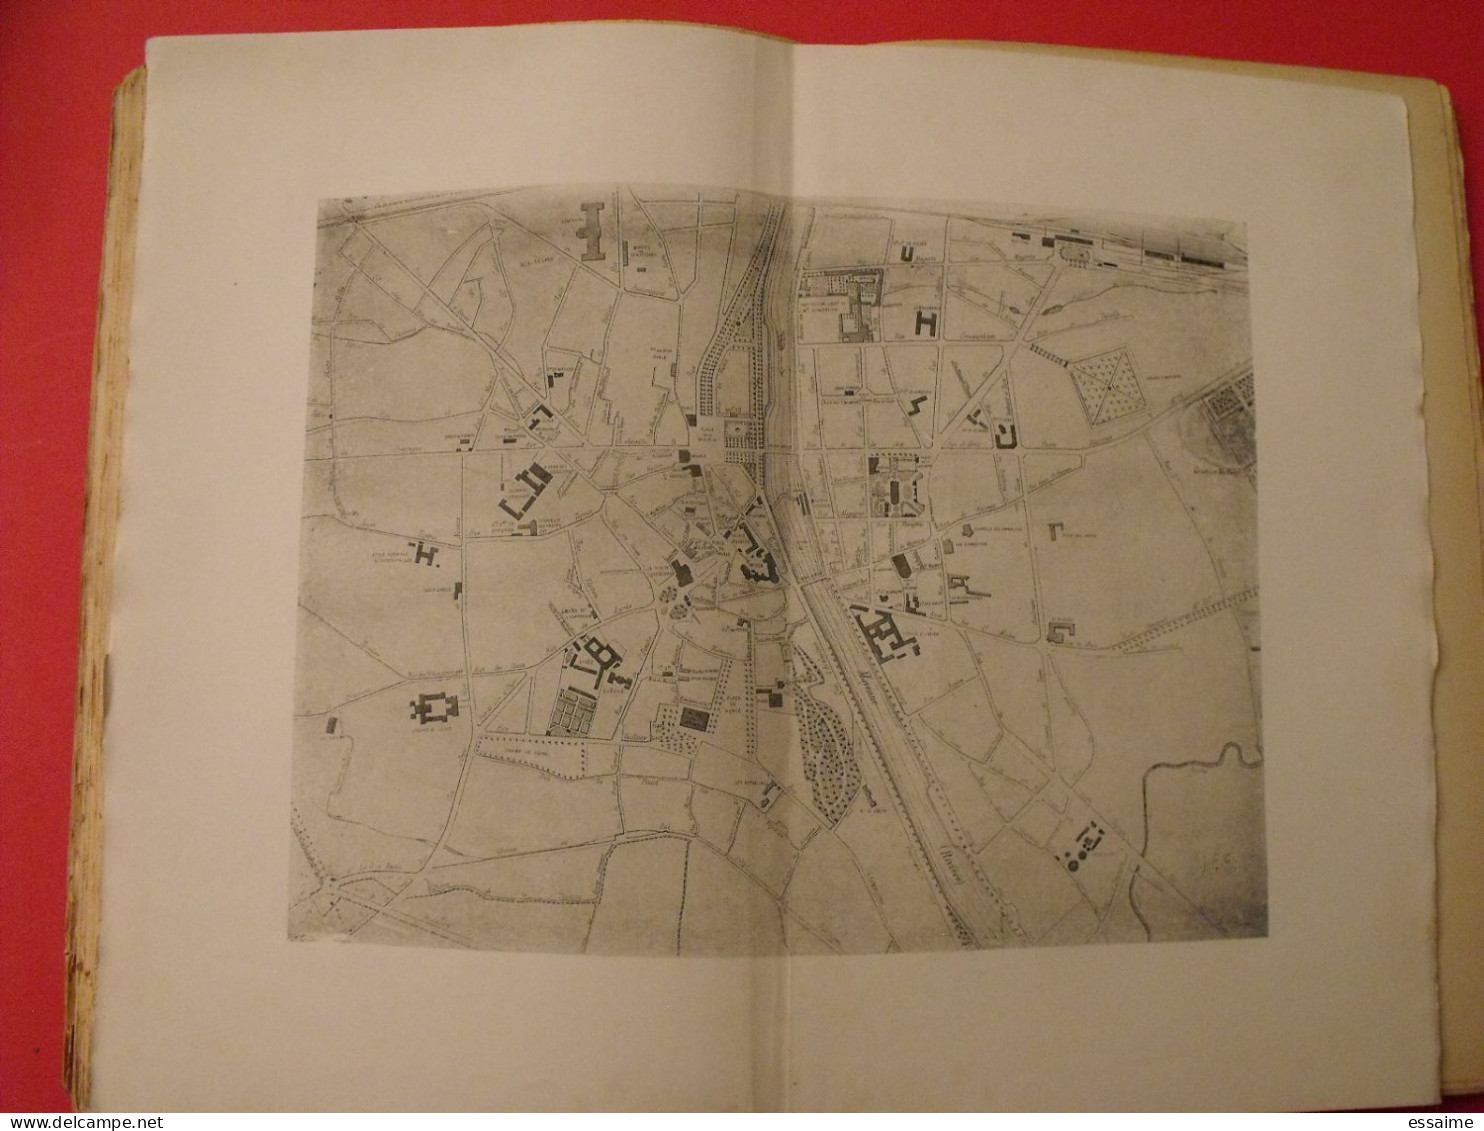 Histoire de Laval par Couanier de Launay. Chailland 1894. Mayenne